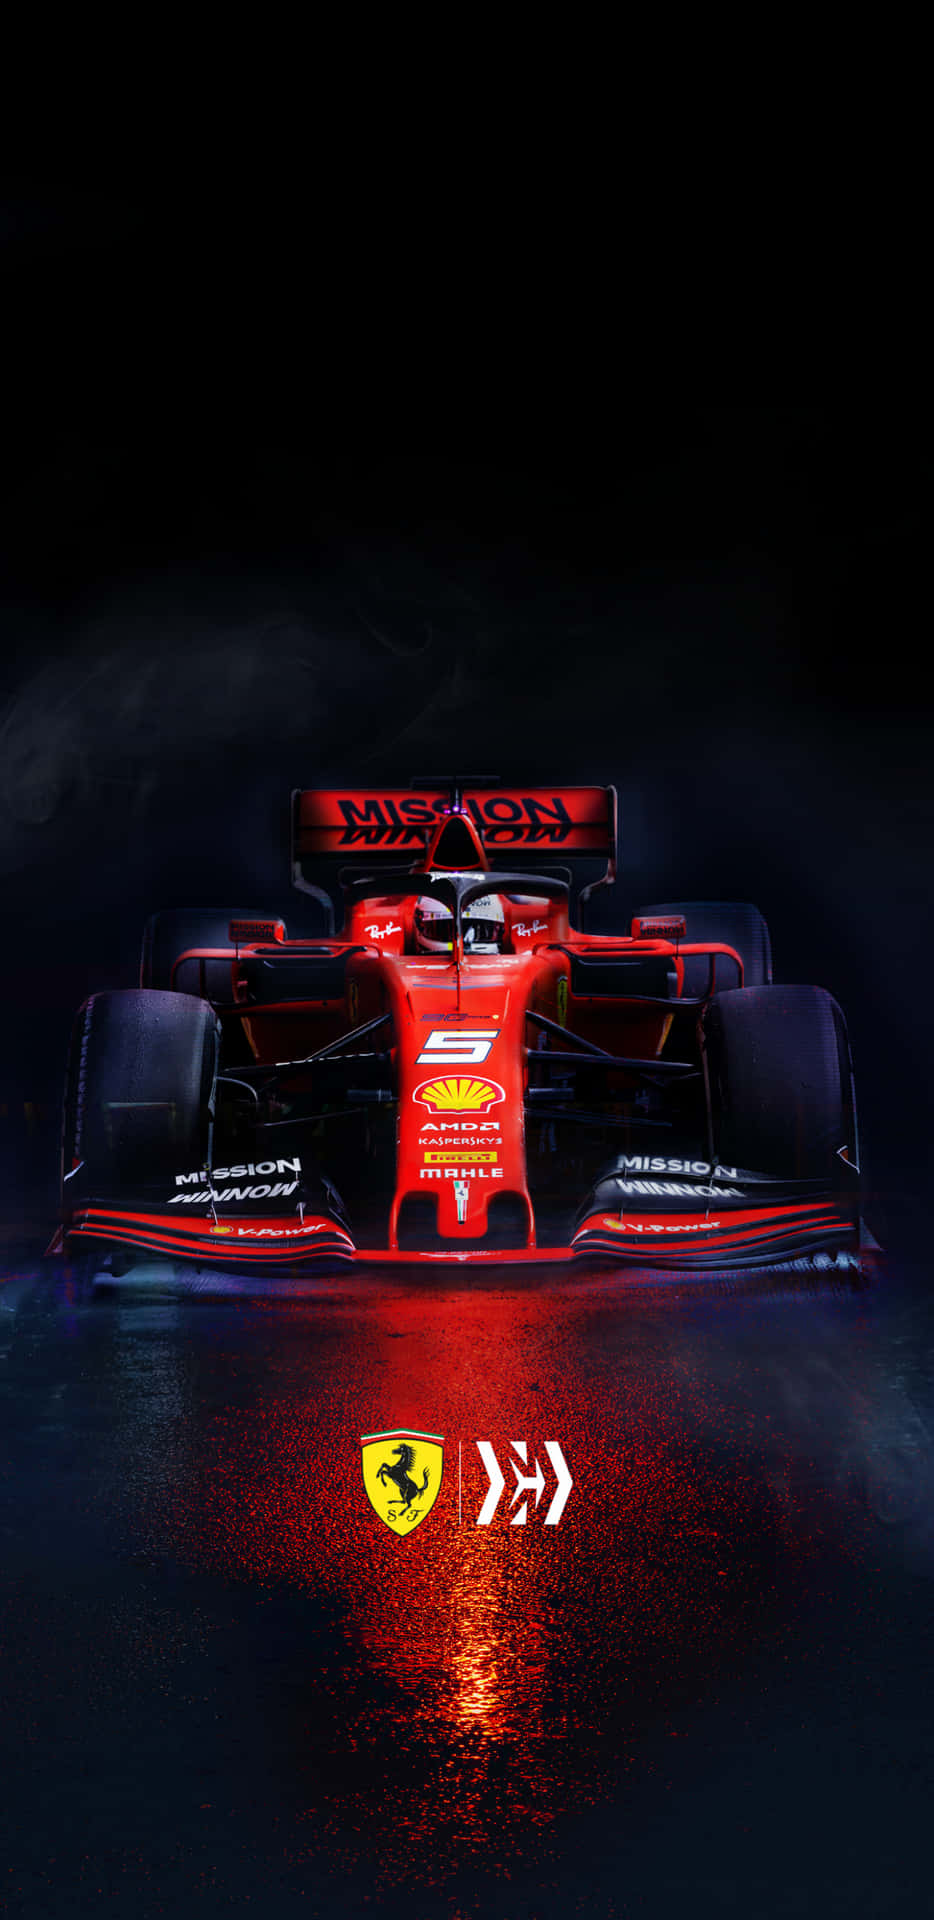 Ferrari F1 Car In The Dark